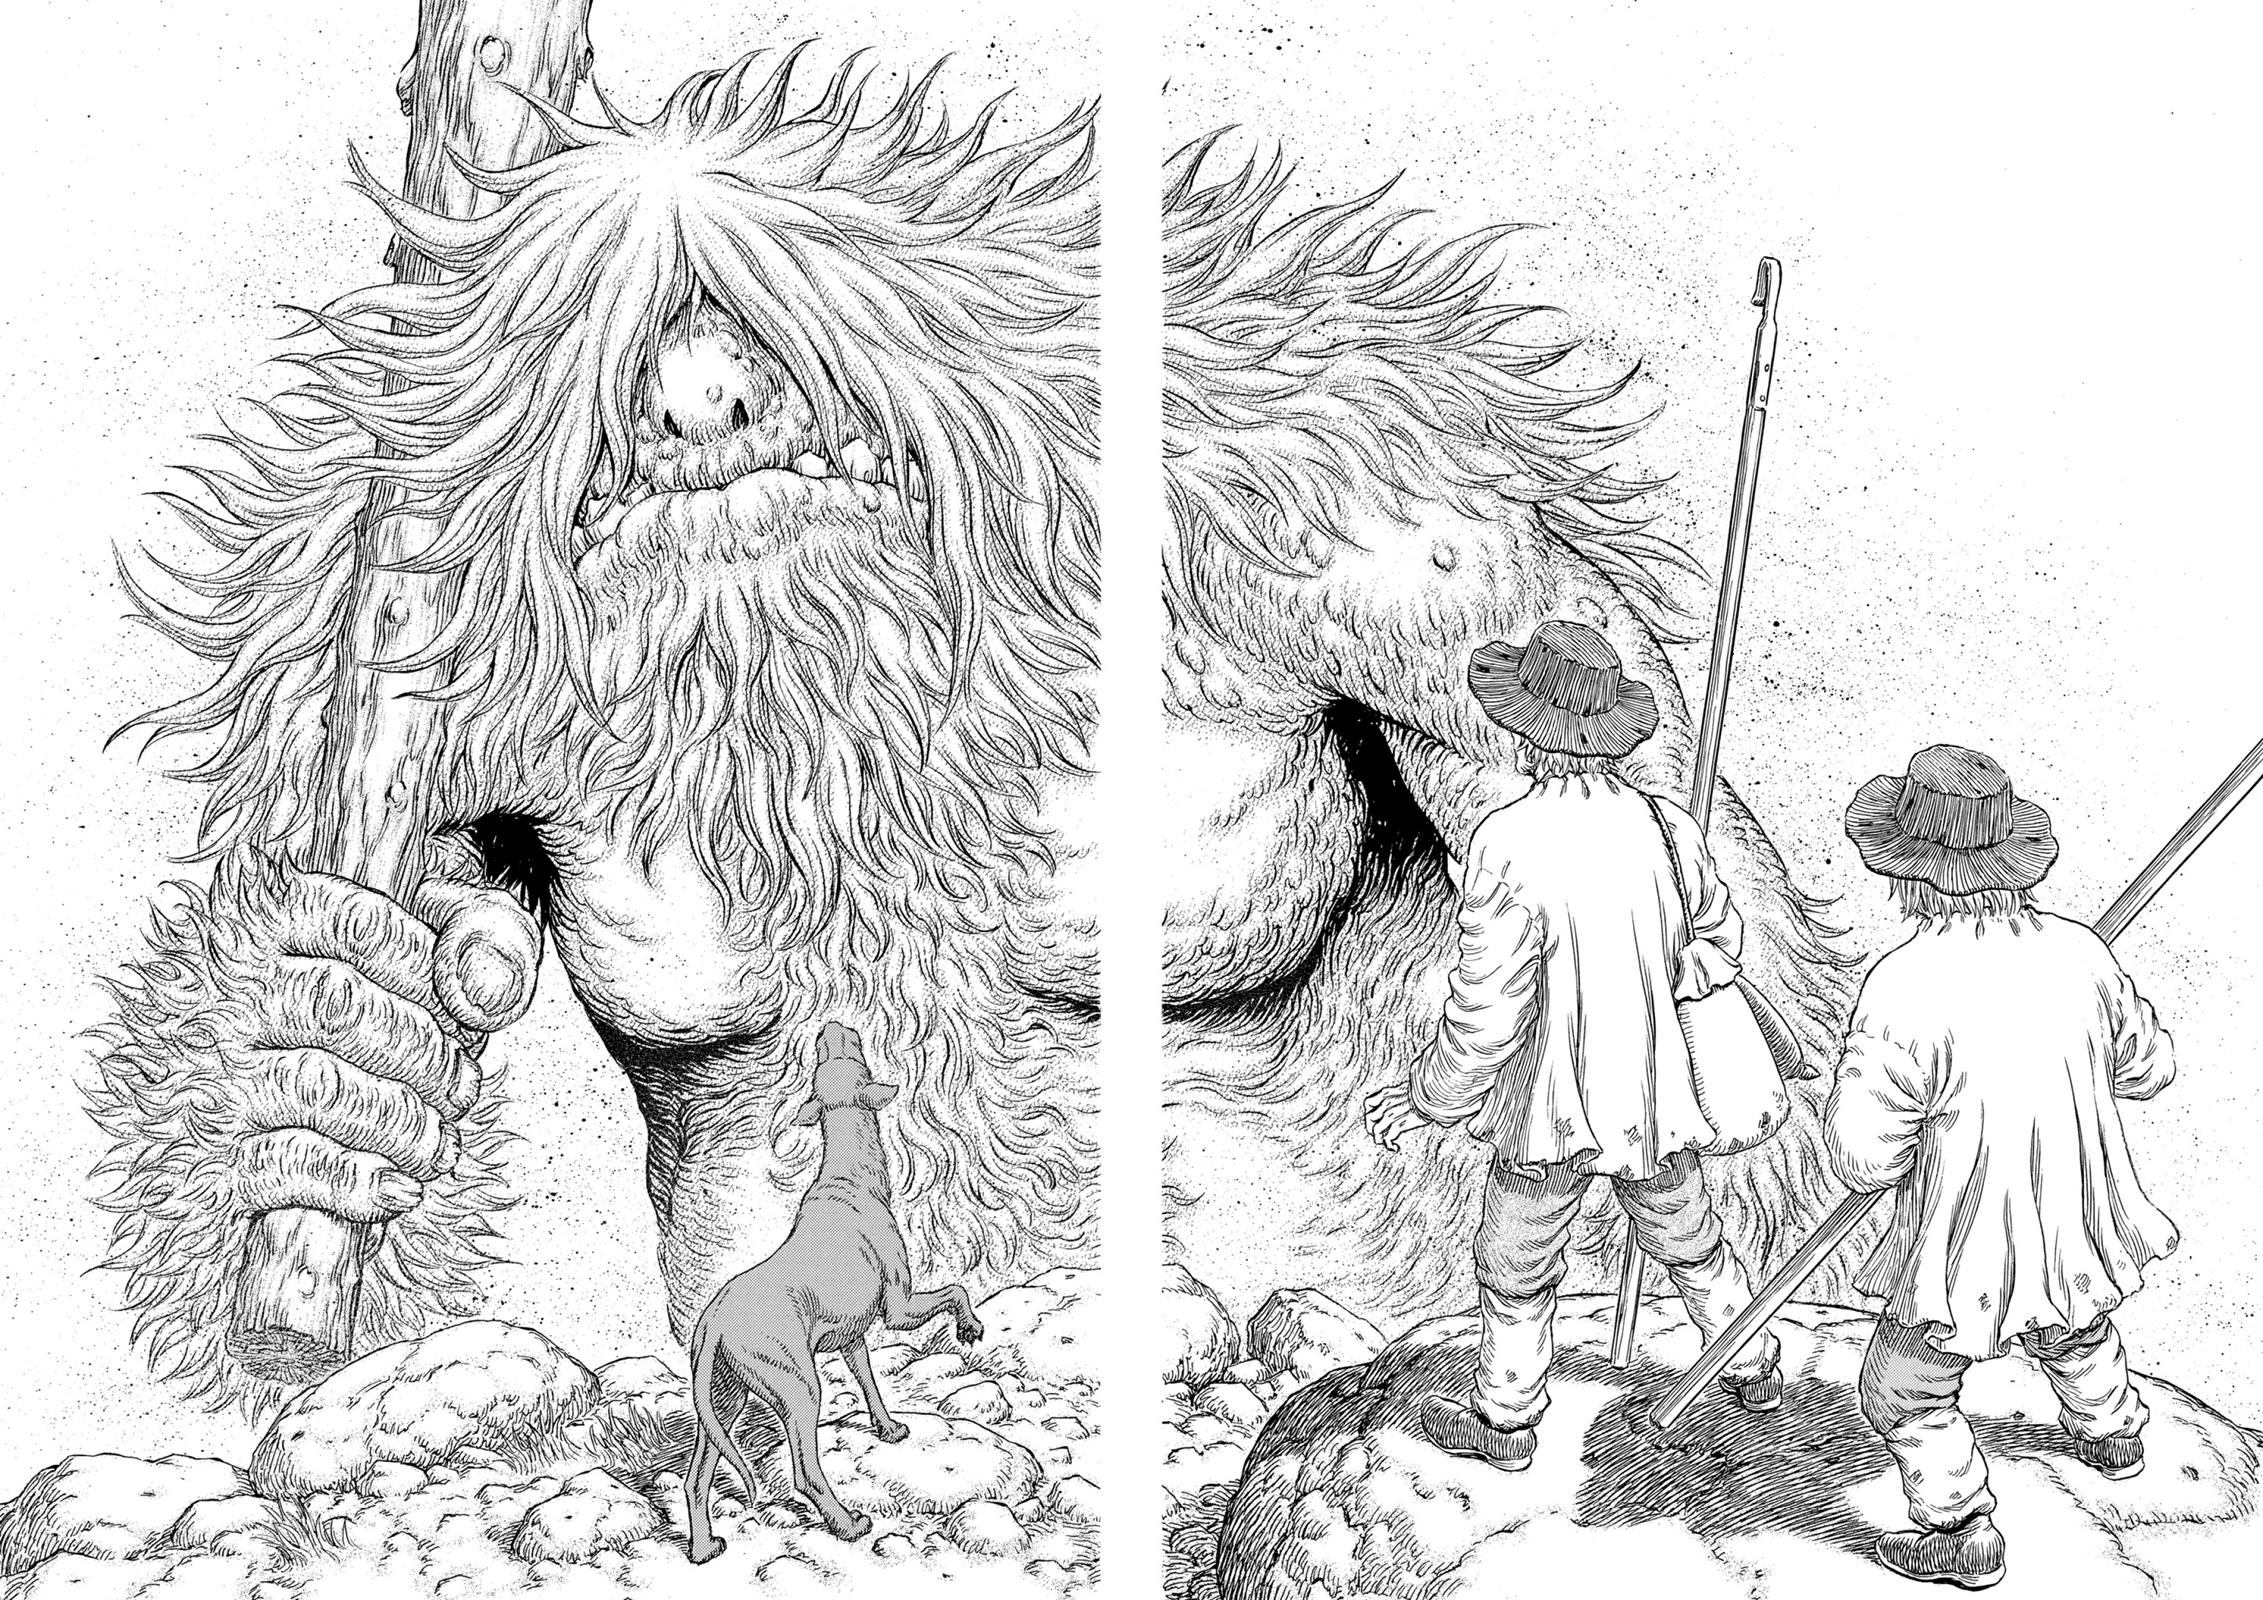 Berserk Manga Chapter 306 image 03